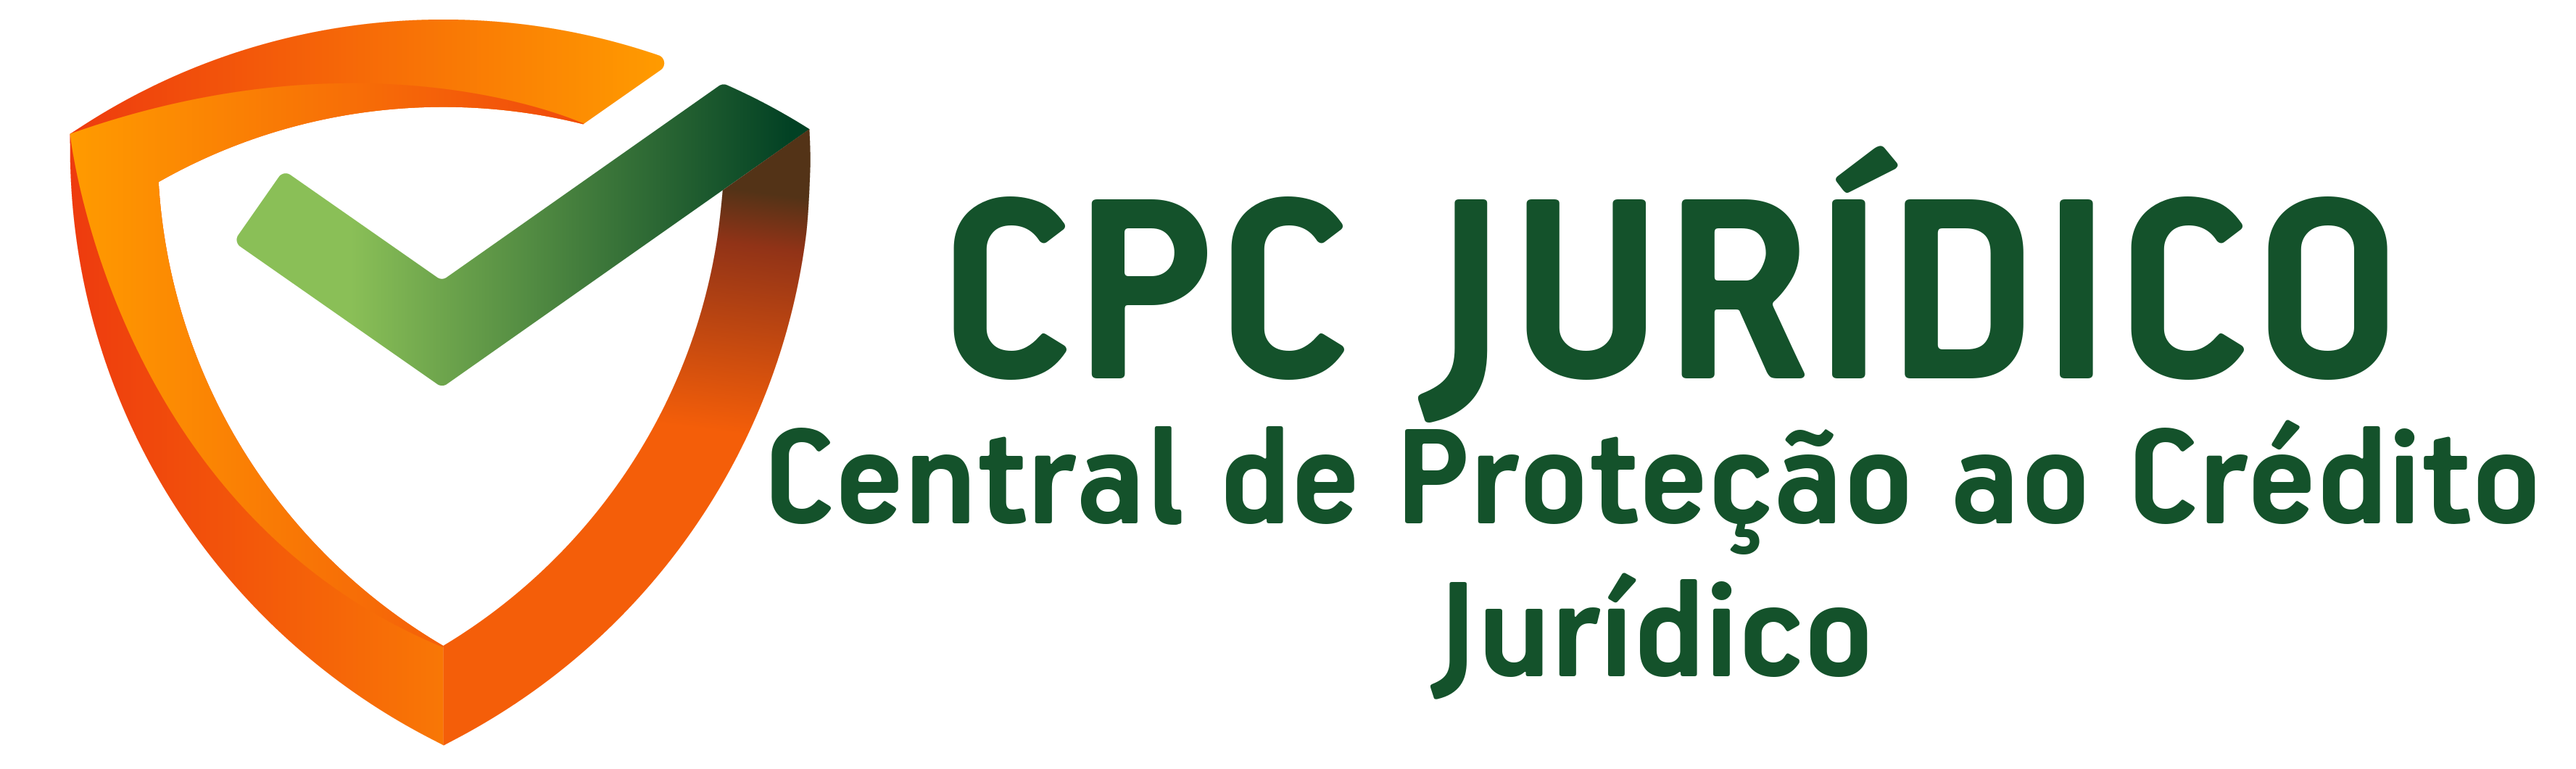 Logo Central de Proteção ao Crédito Juridico